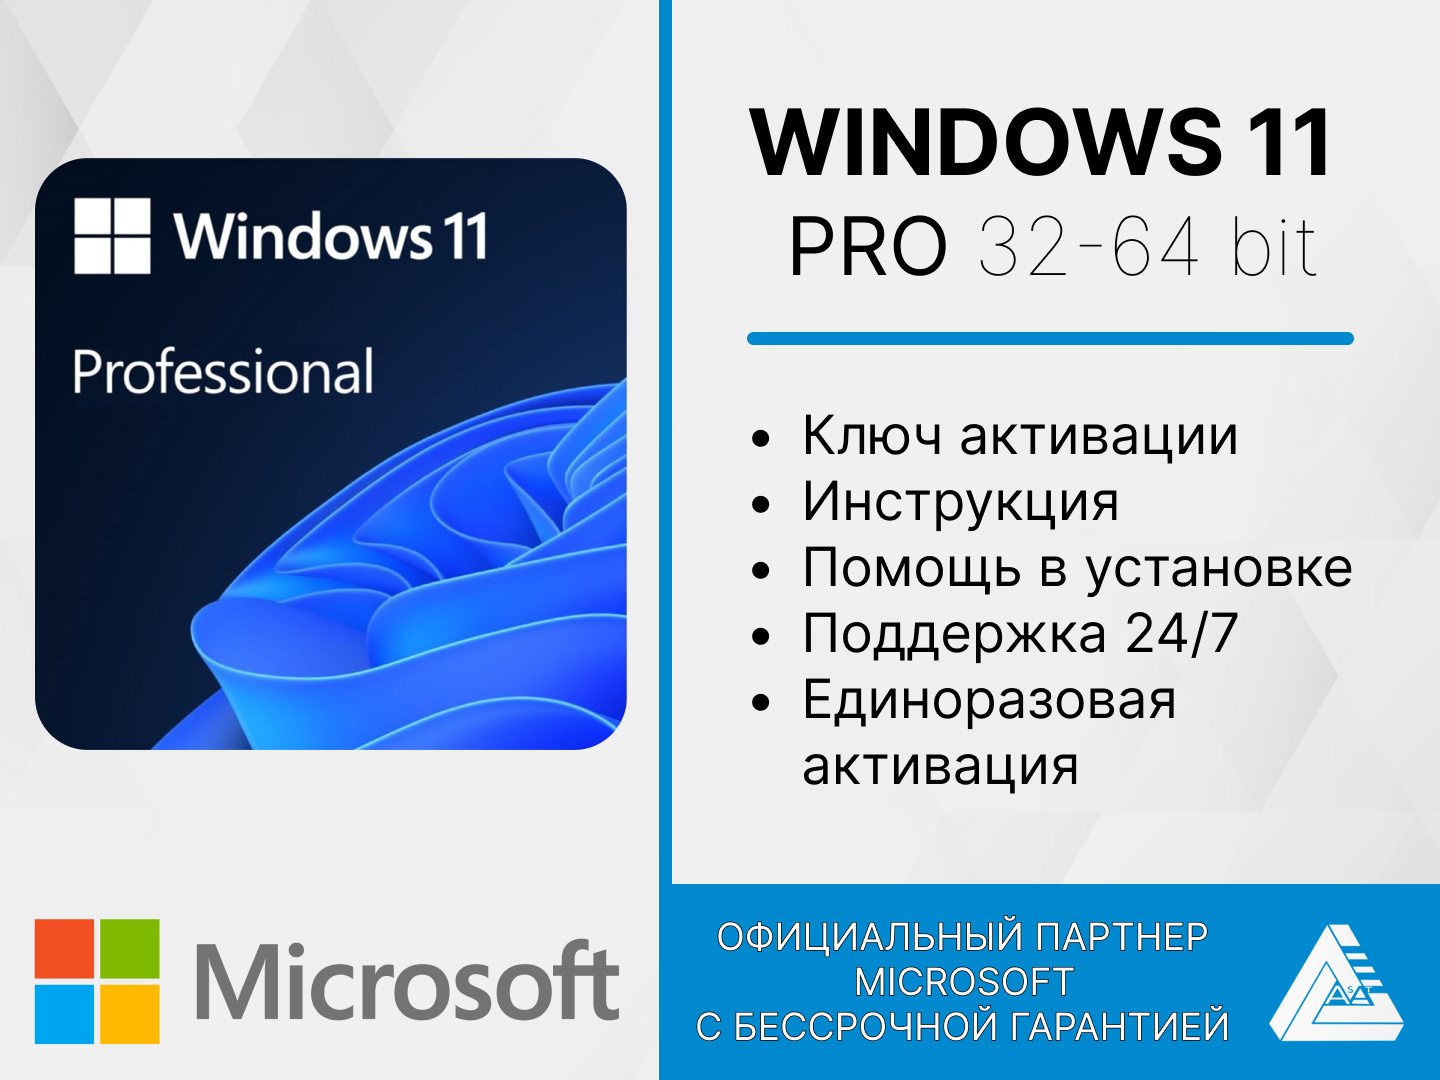 Microsoft Windows 11 professional - привязка к материнской плате, электронный ключ, русский язык (бессрочная активация)